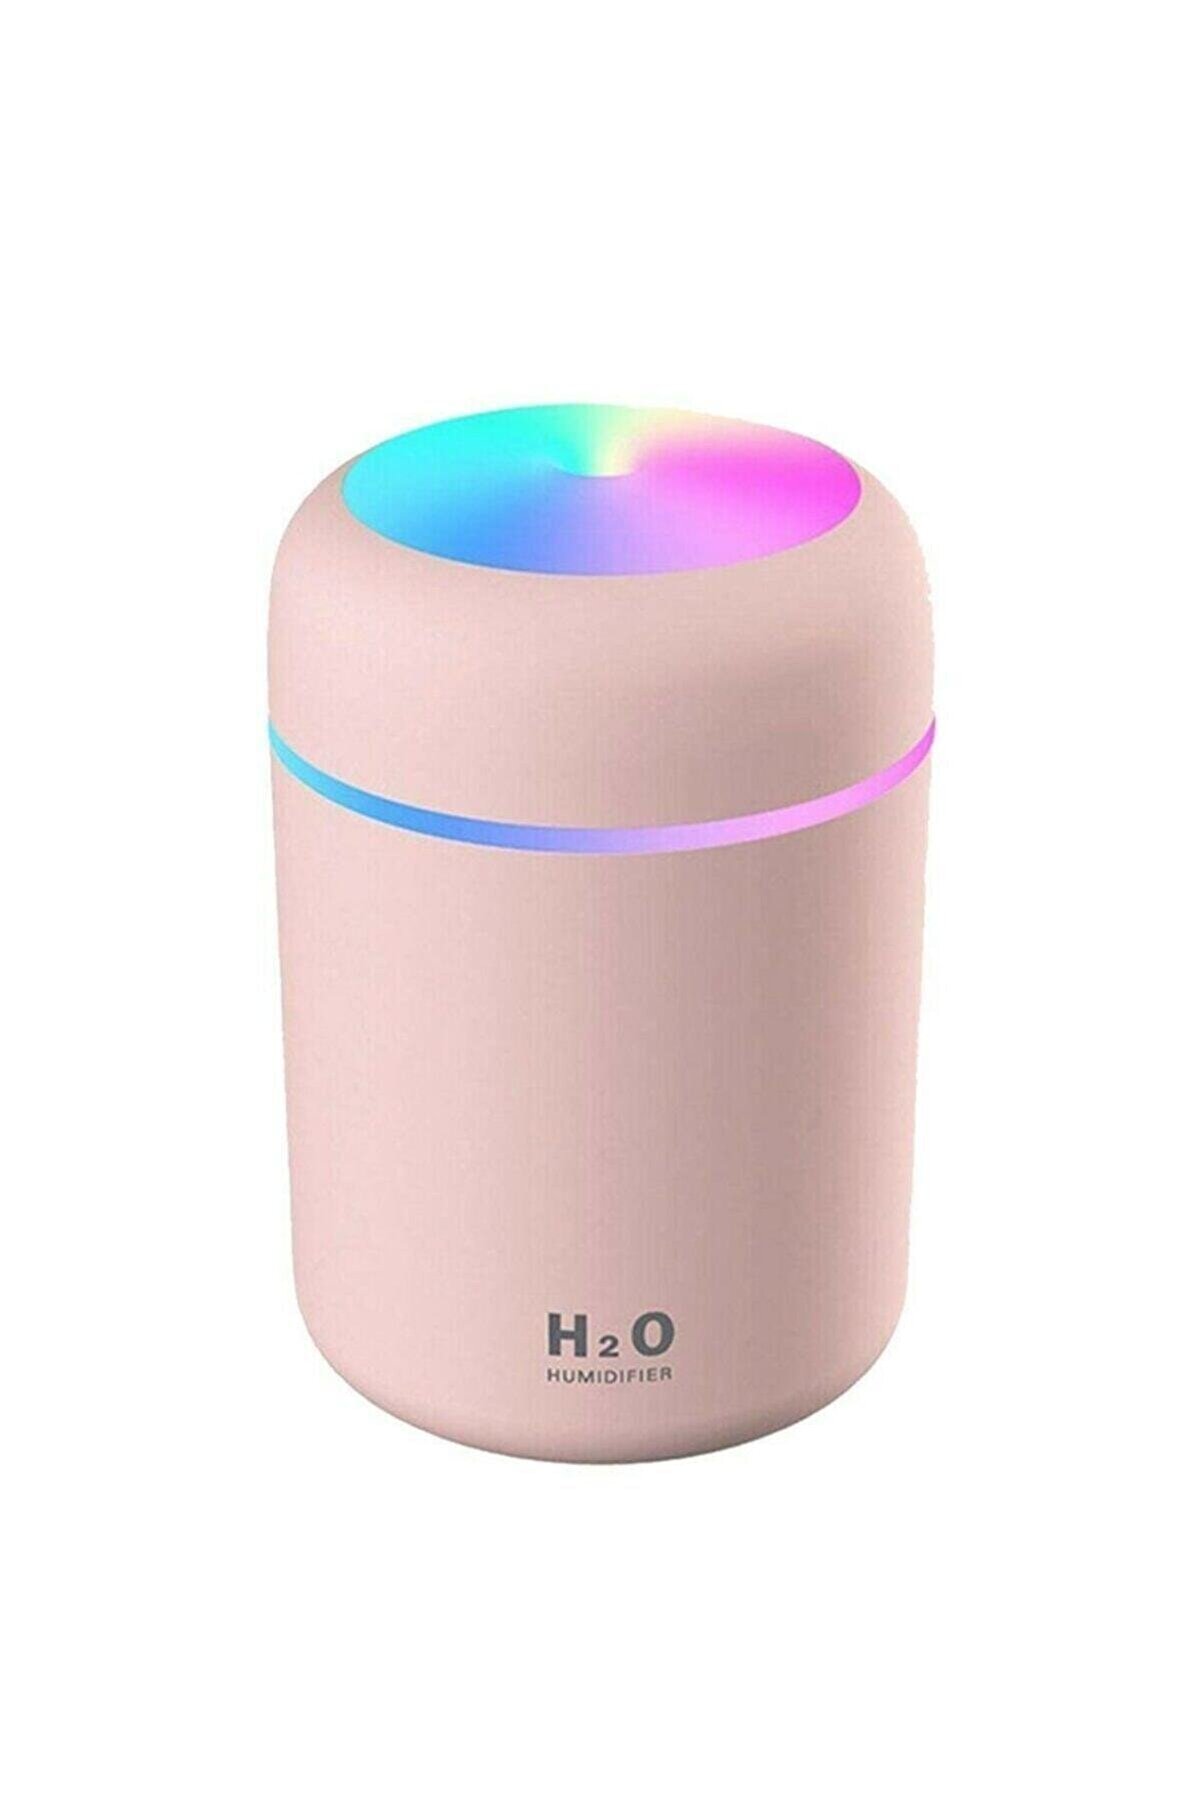 H2O Humidifier 300 ml Ulrasonik Oda Hava Ortam Nemlendirici ve Aroma Difüzörü Pembe